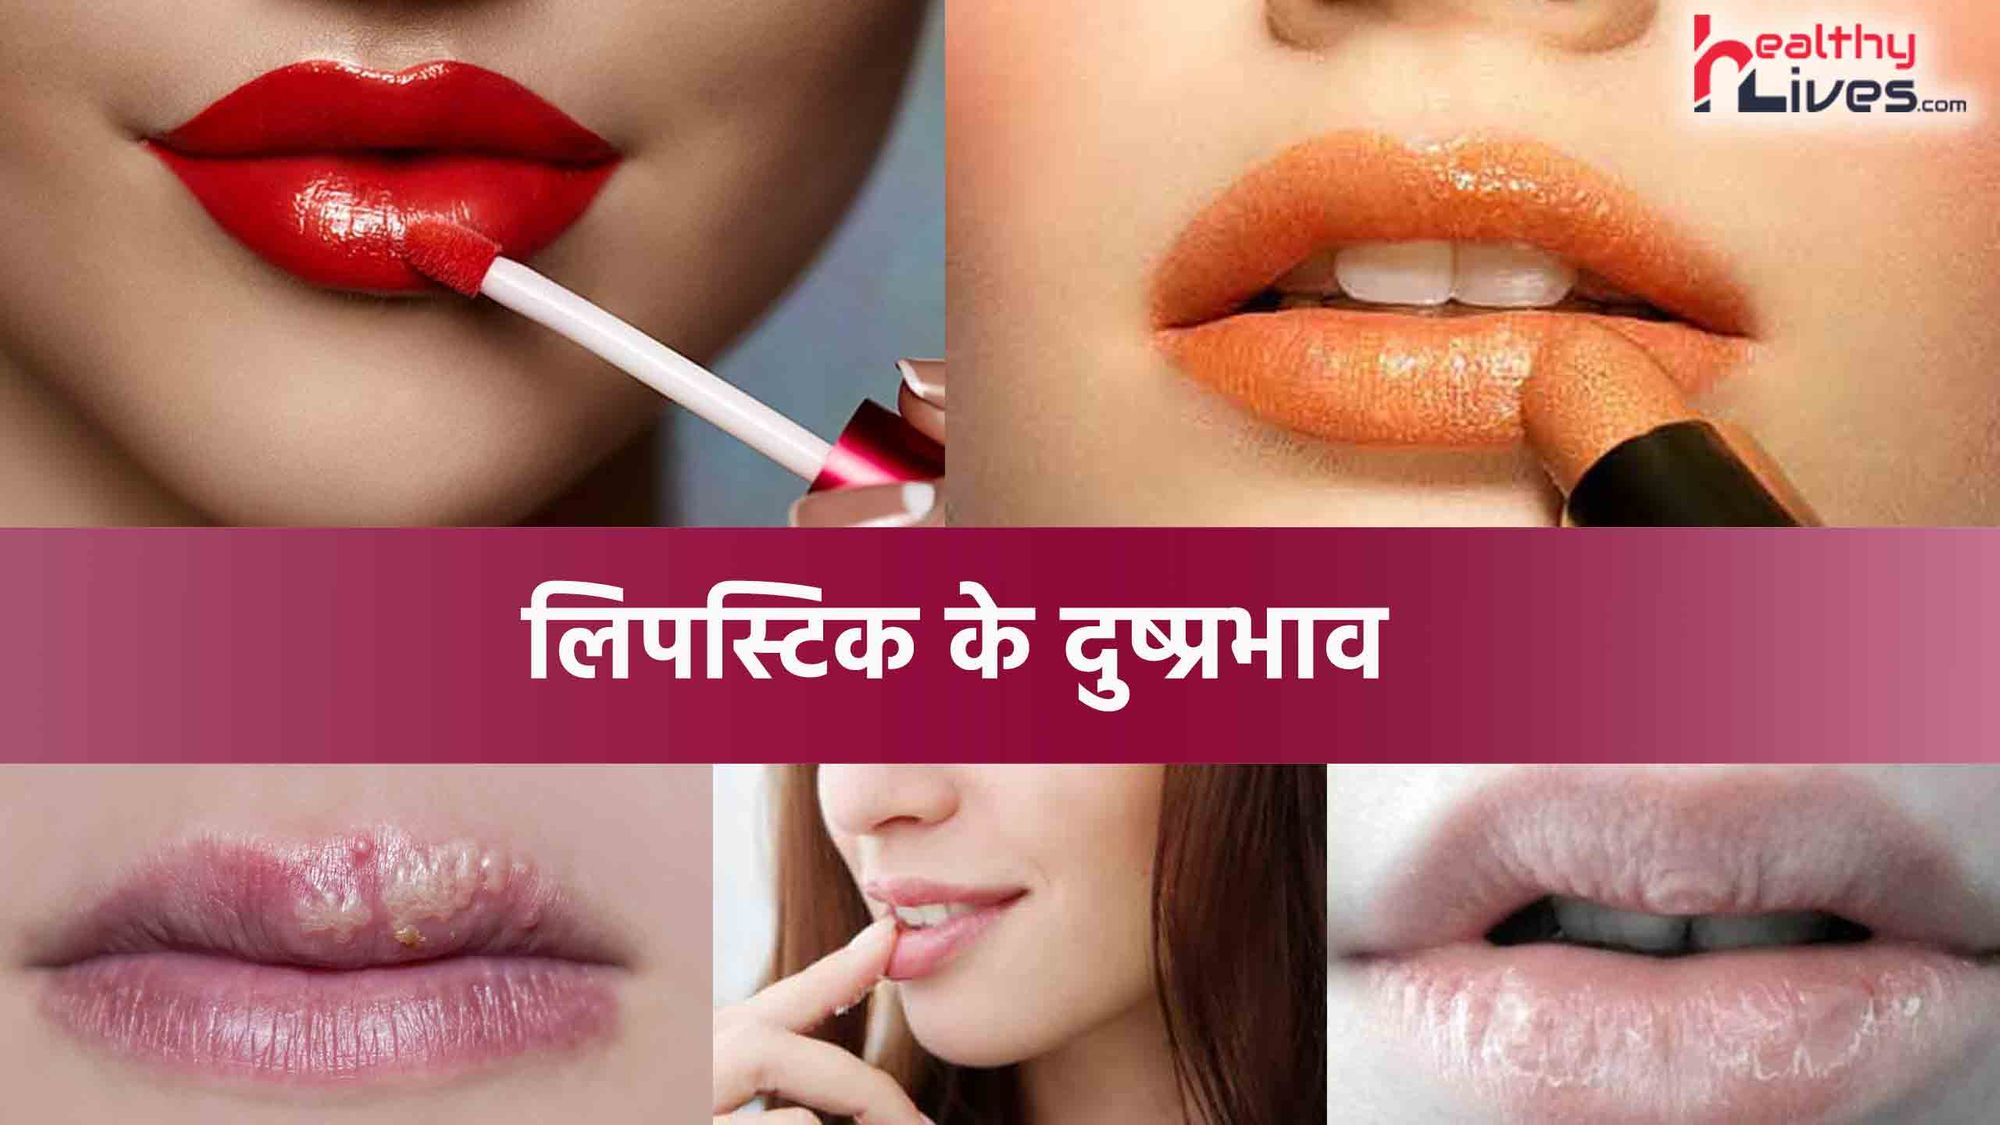 Side Effects Of Lipstick: सुंदरता को बढ़ाने के साथ लिपस्टिक के होते हैं दुष्प्रभाव भी